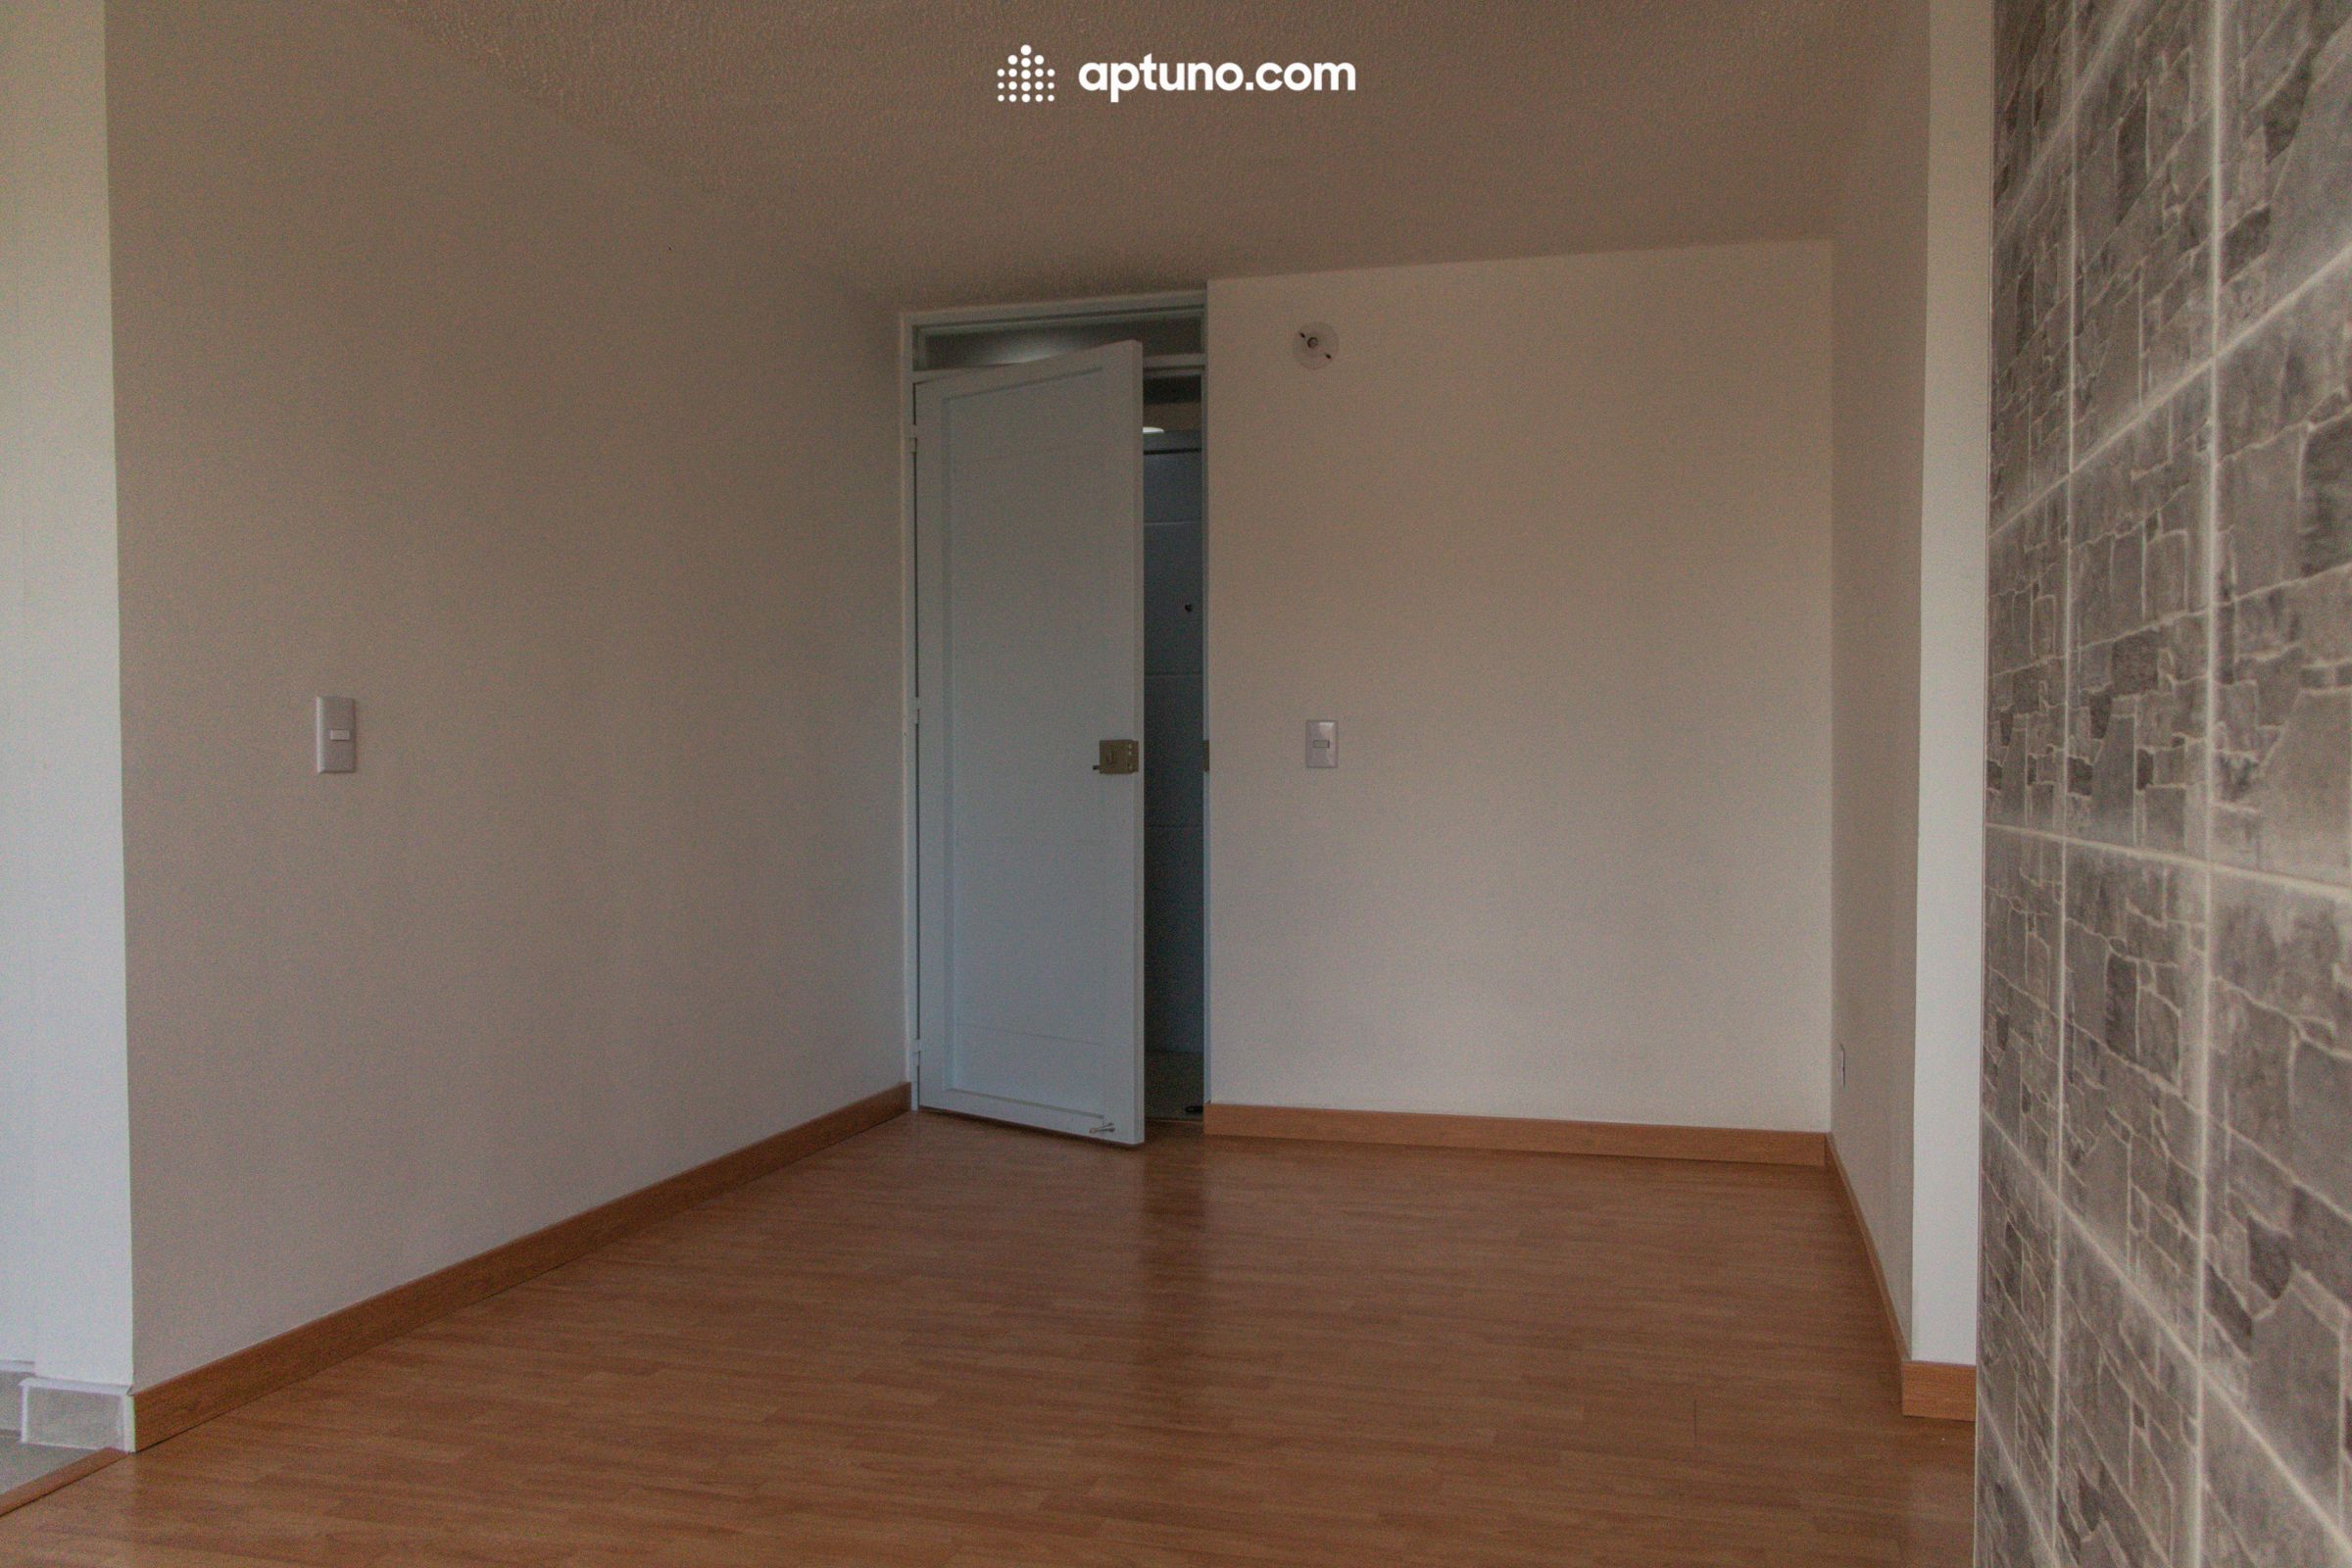 Apartamento en arriendo Rafael Escamilla 39 m² - $ 1.020.000